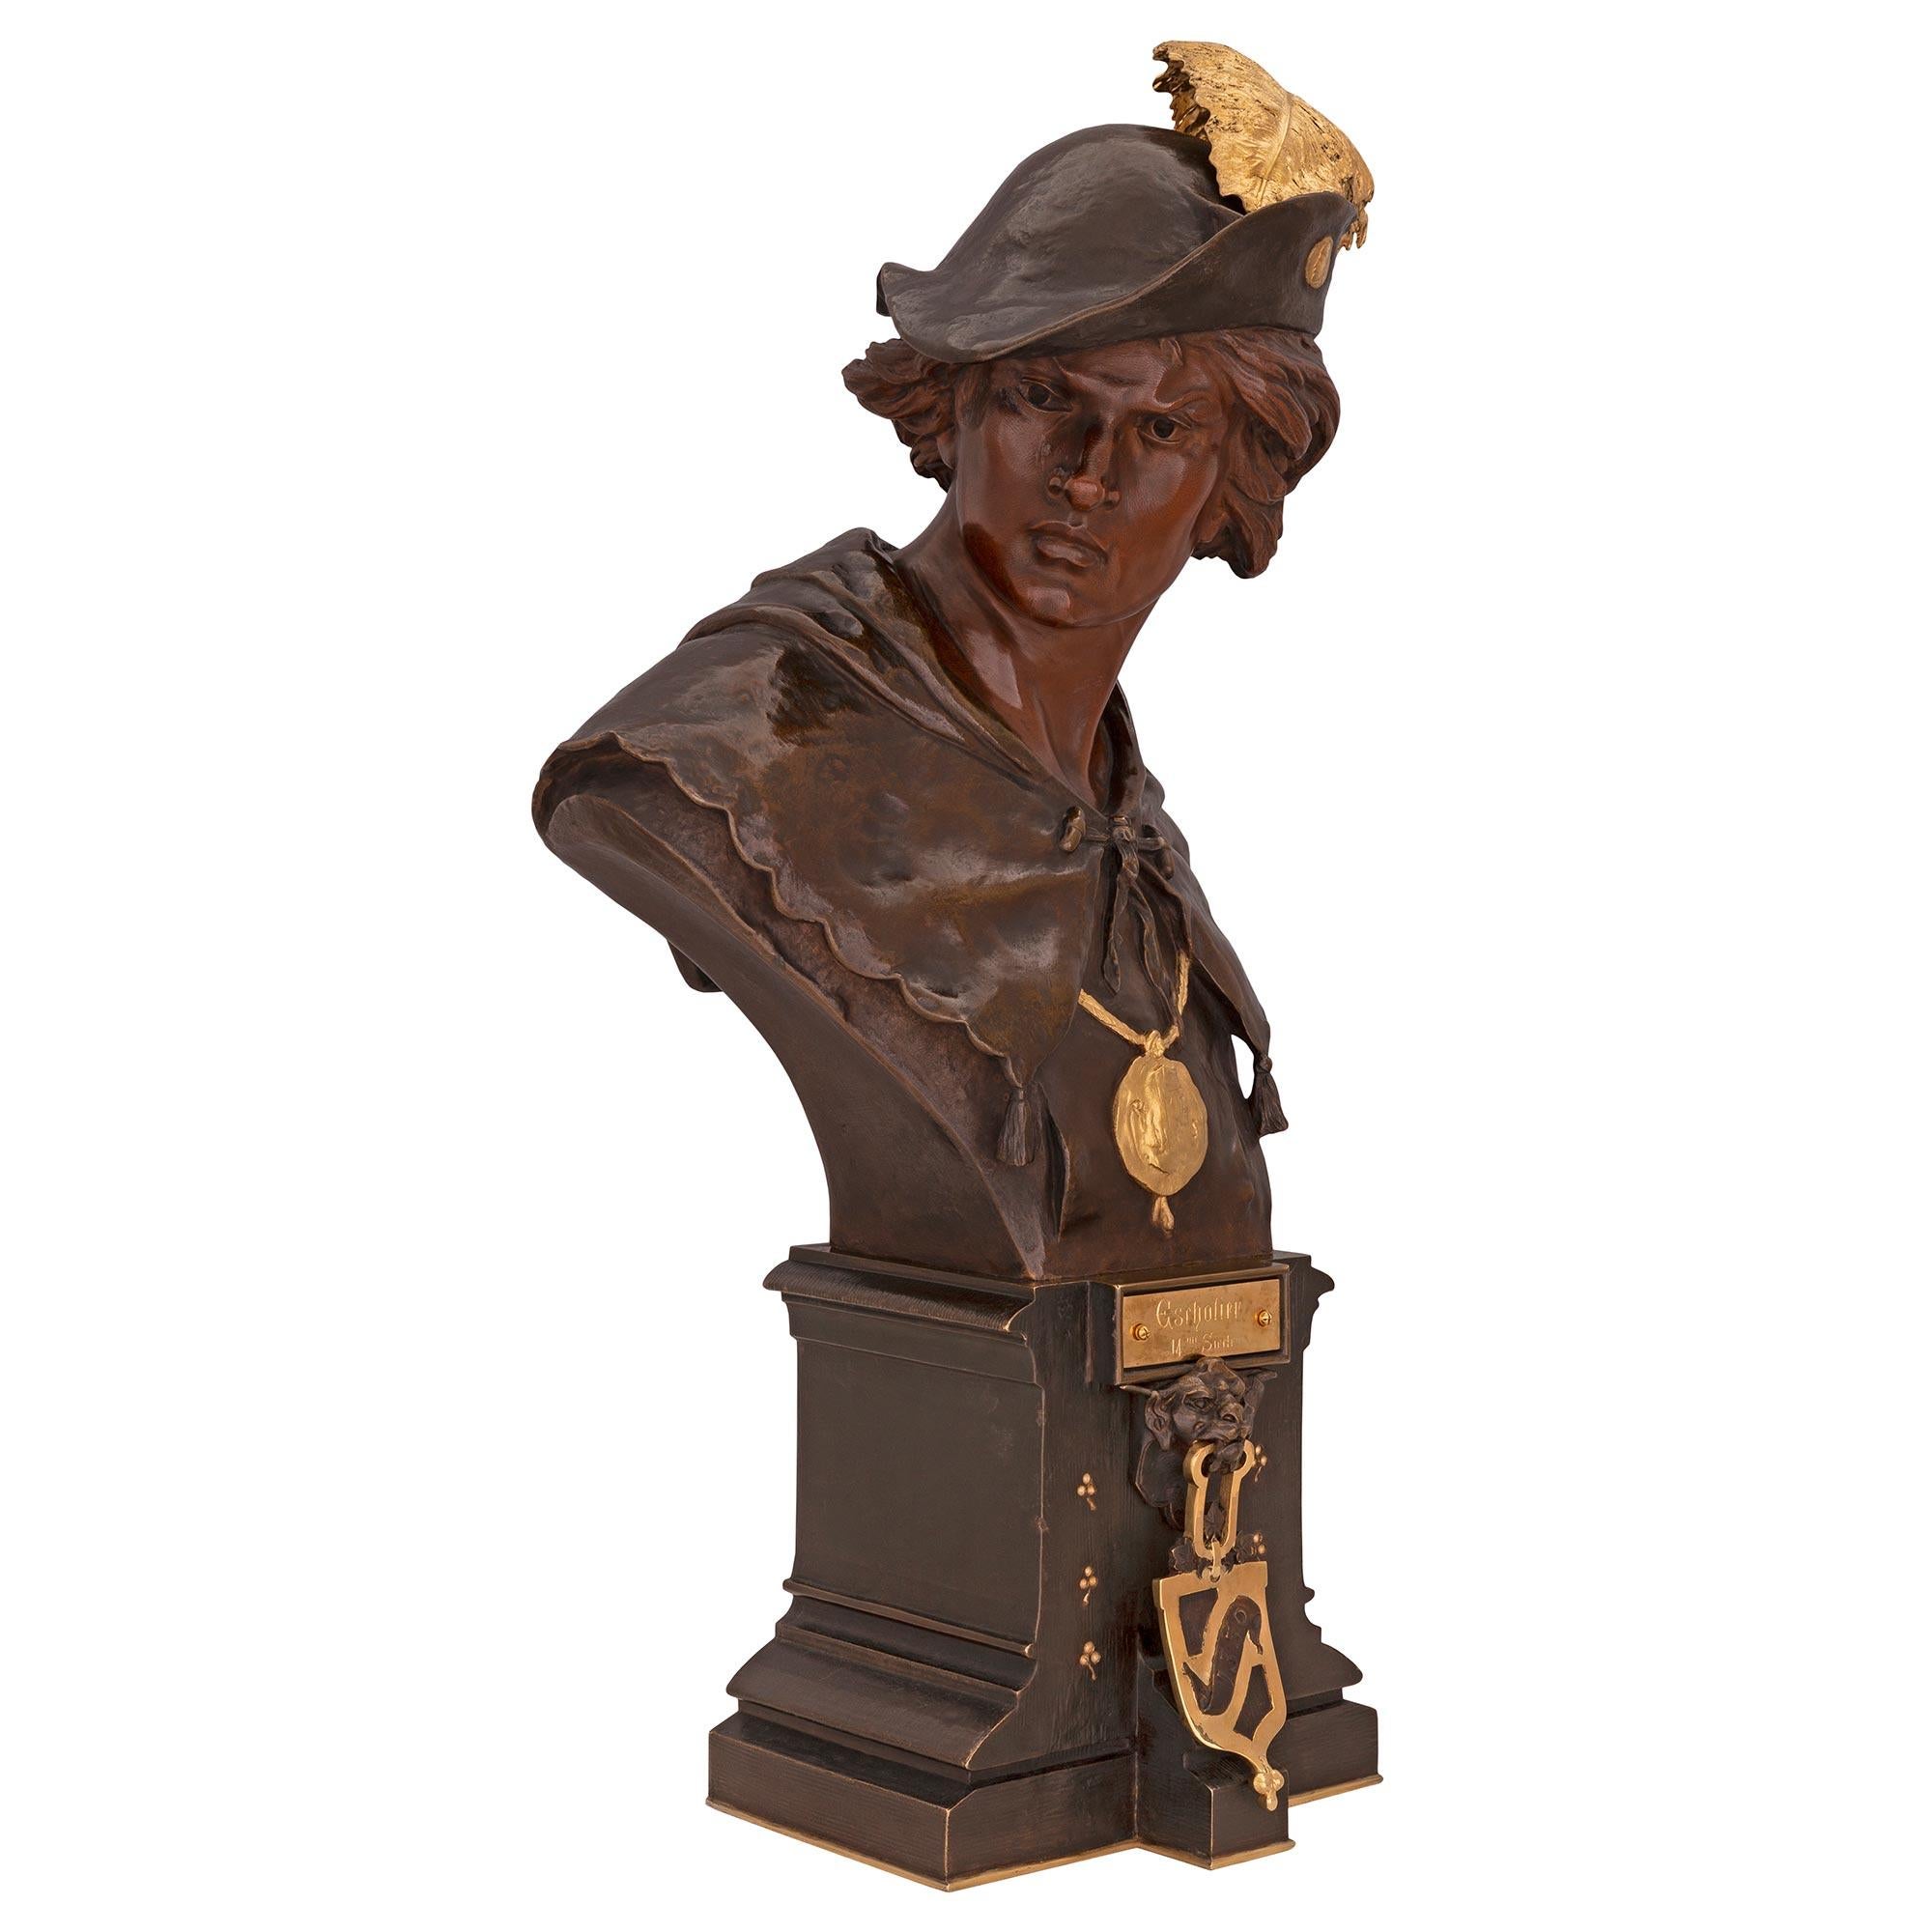 Un beau buste en bronze patiné et en bronze doré du 19ème siècle, intitulé ESRHOLIER et signé par EMILE LOUIS PICAULT. Le buste est surmonté d'une base carrée dotée d'un fin filet inférieur en bronze doré et d'un ravissant motif tacheté. Sur le